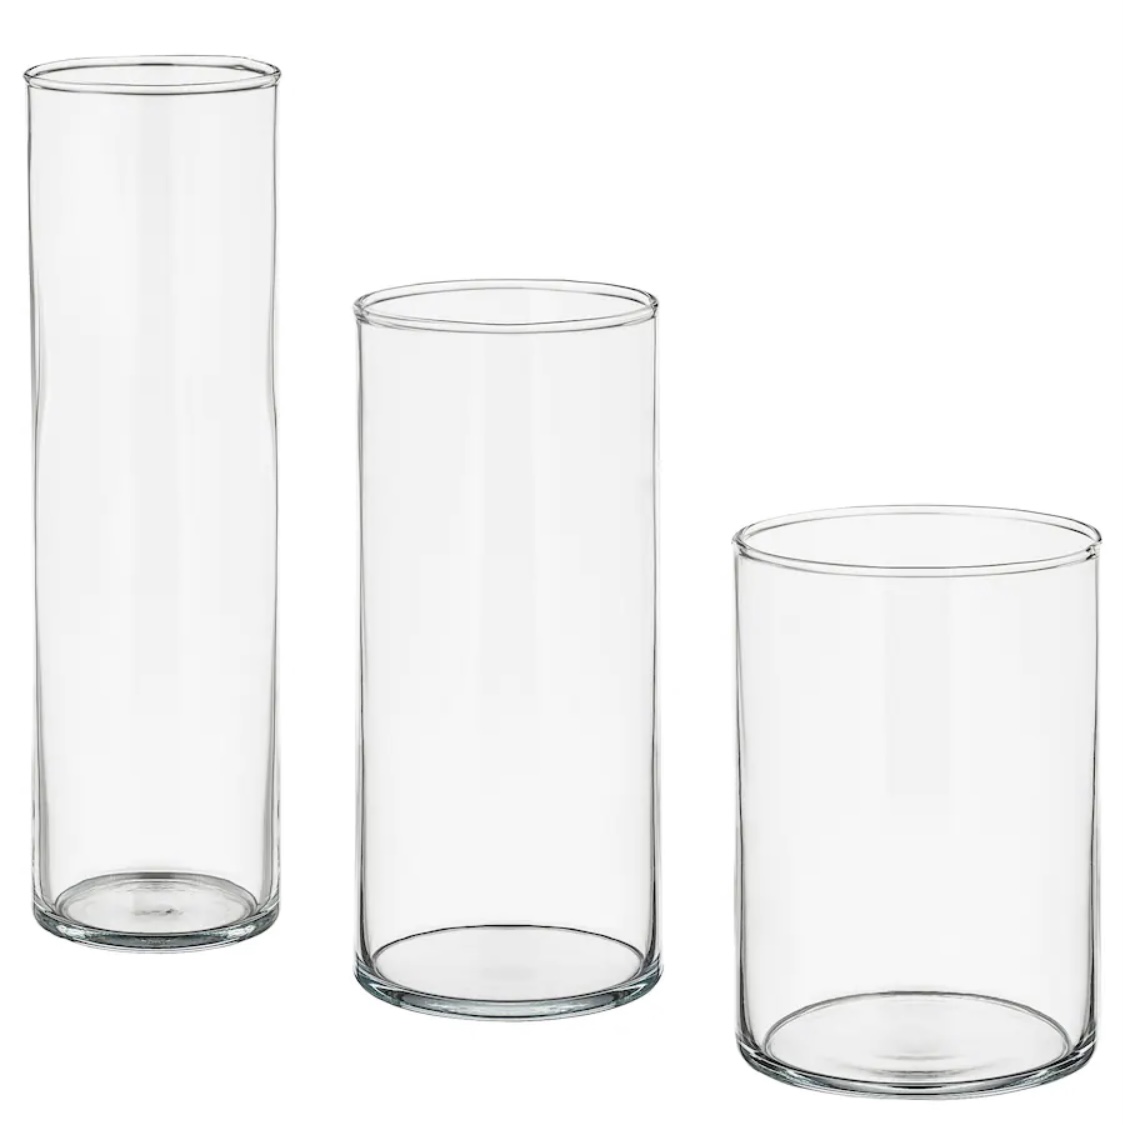 (IKEA) Vase Set